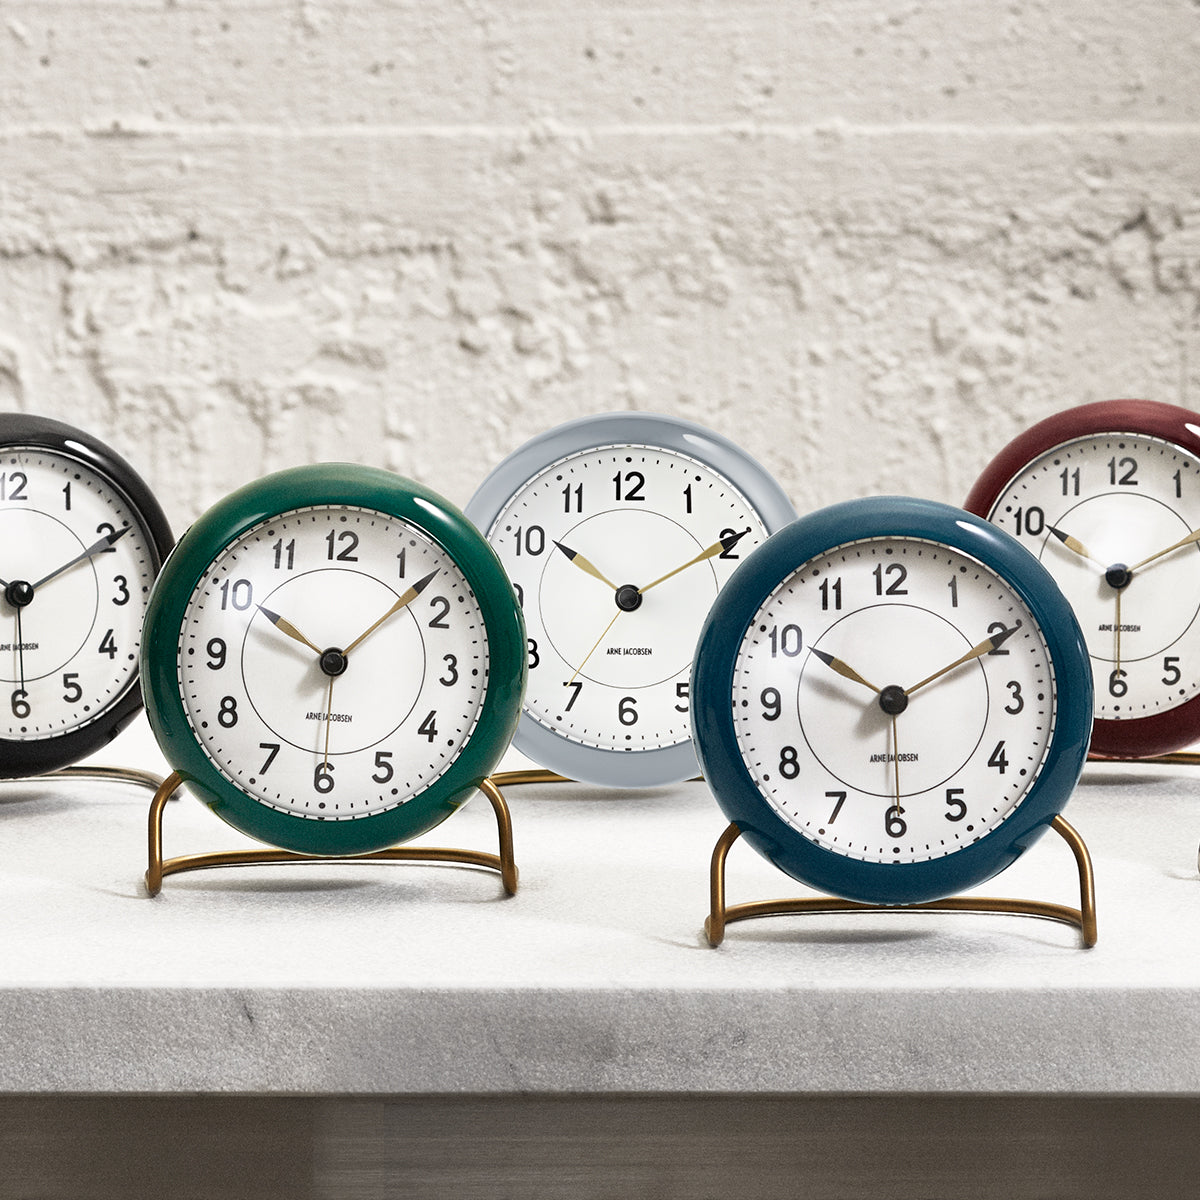 Arne Jacobsen Station Table Alarm Clock, 5 Color Variants – FJØRN